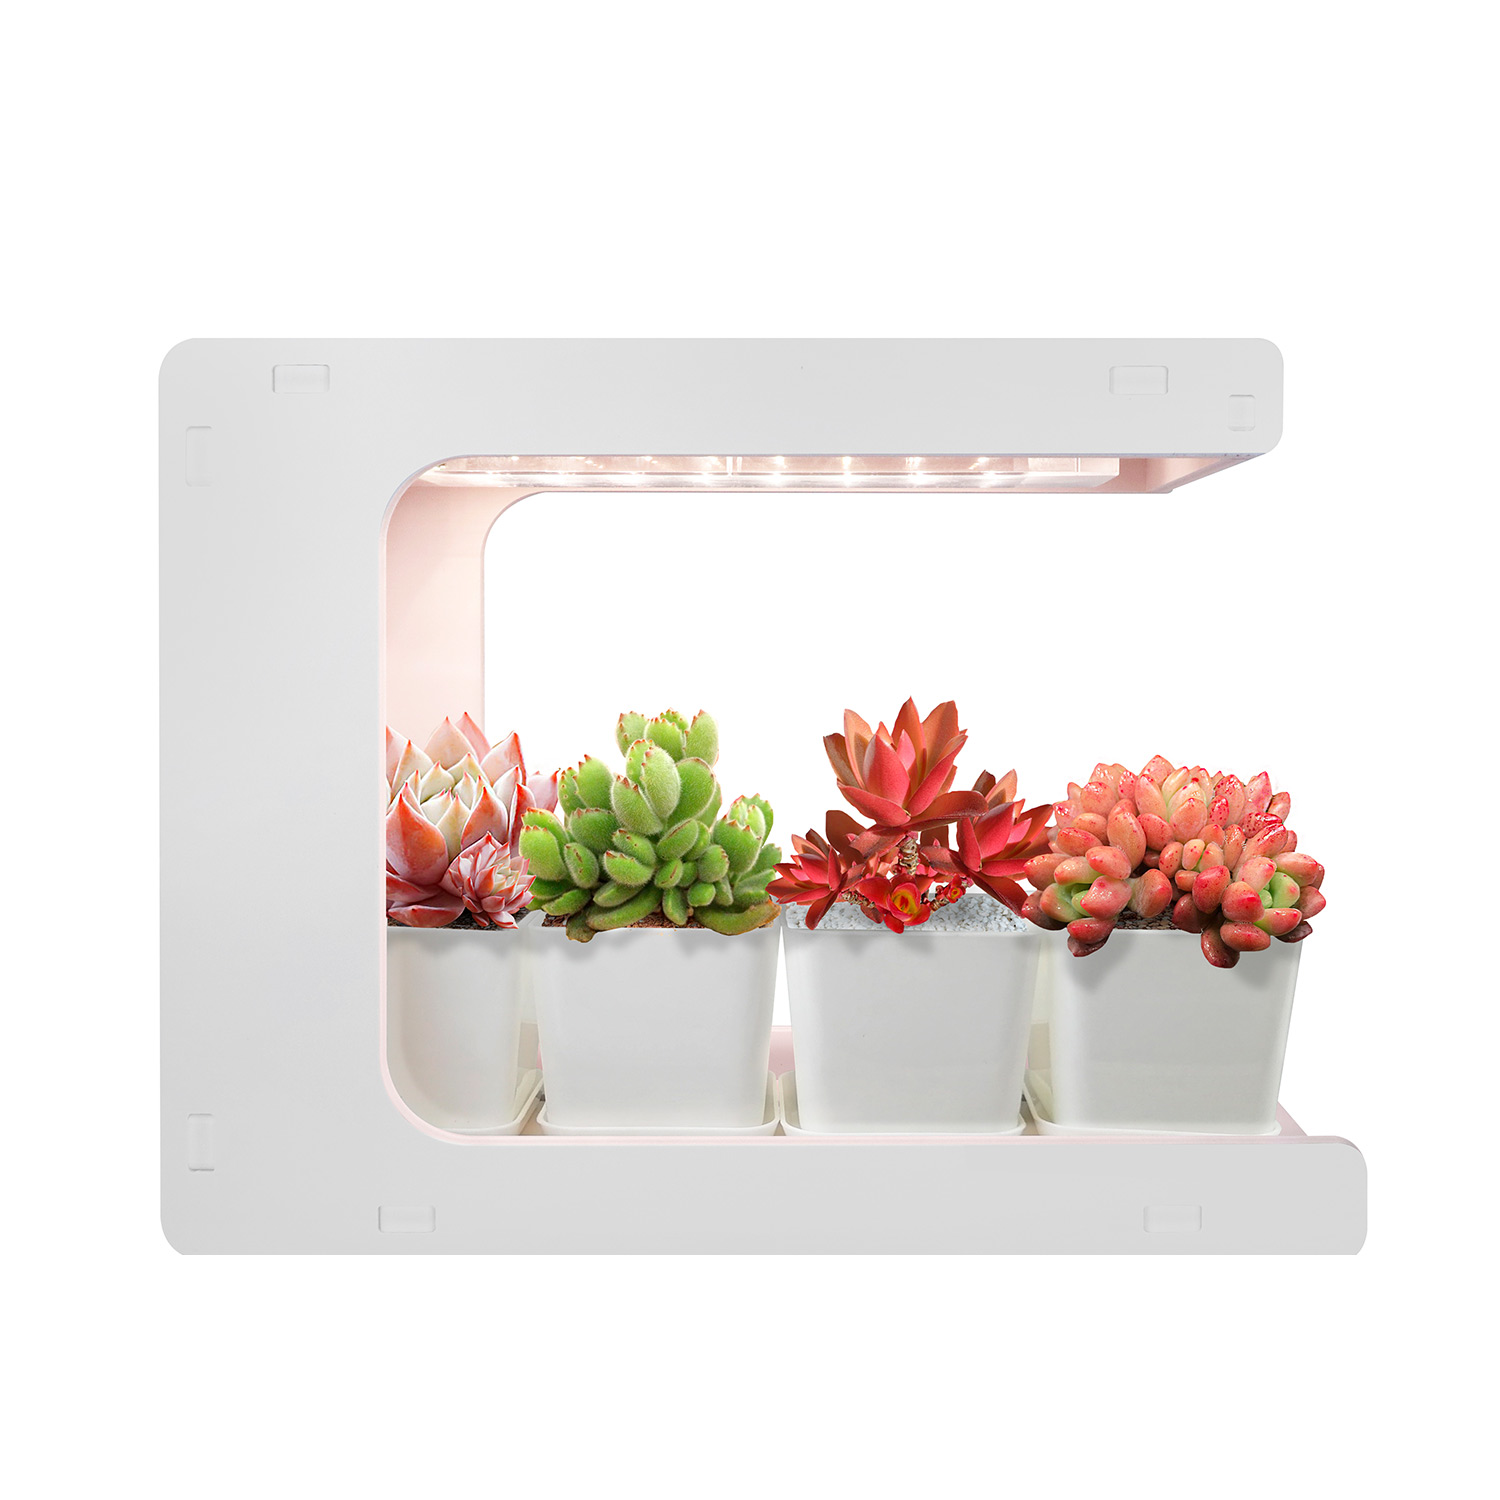 MG009 Indoor Growing Kits for Indoor Plants  Apartment Herb Kitchen Growing Kit  Indoor Grow Lamp